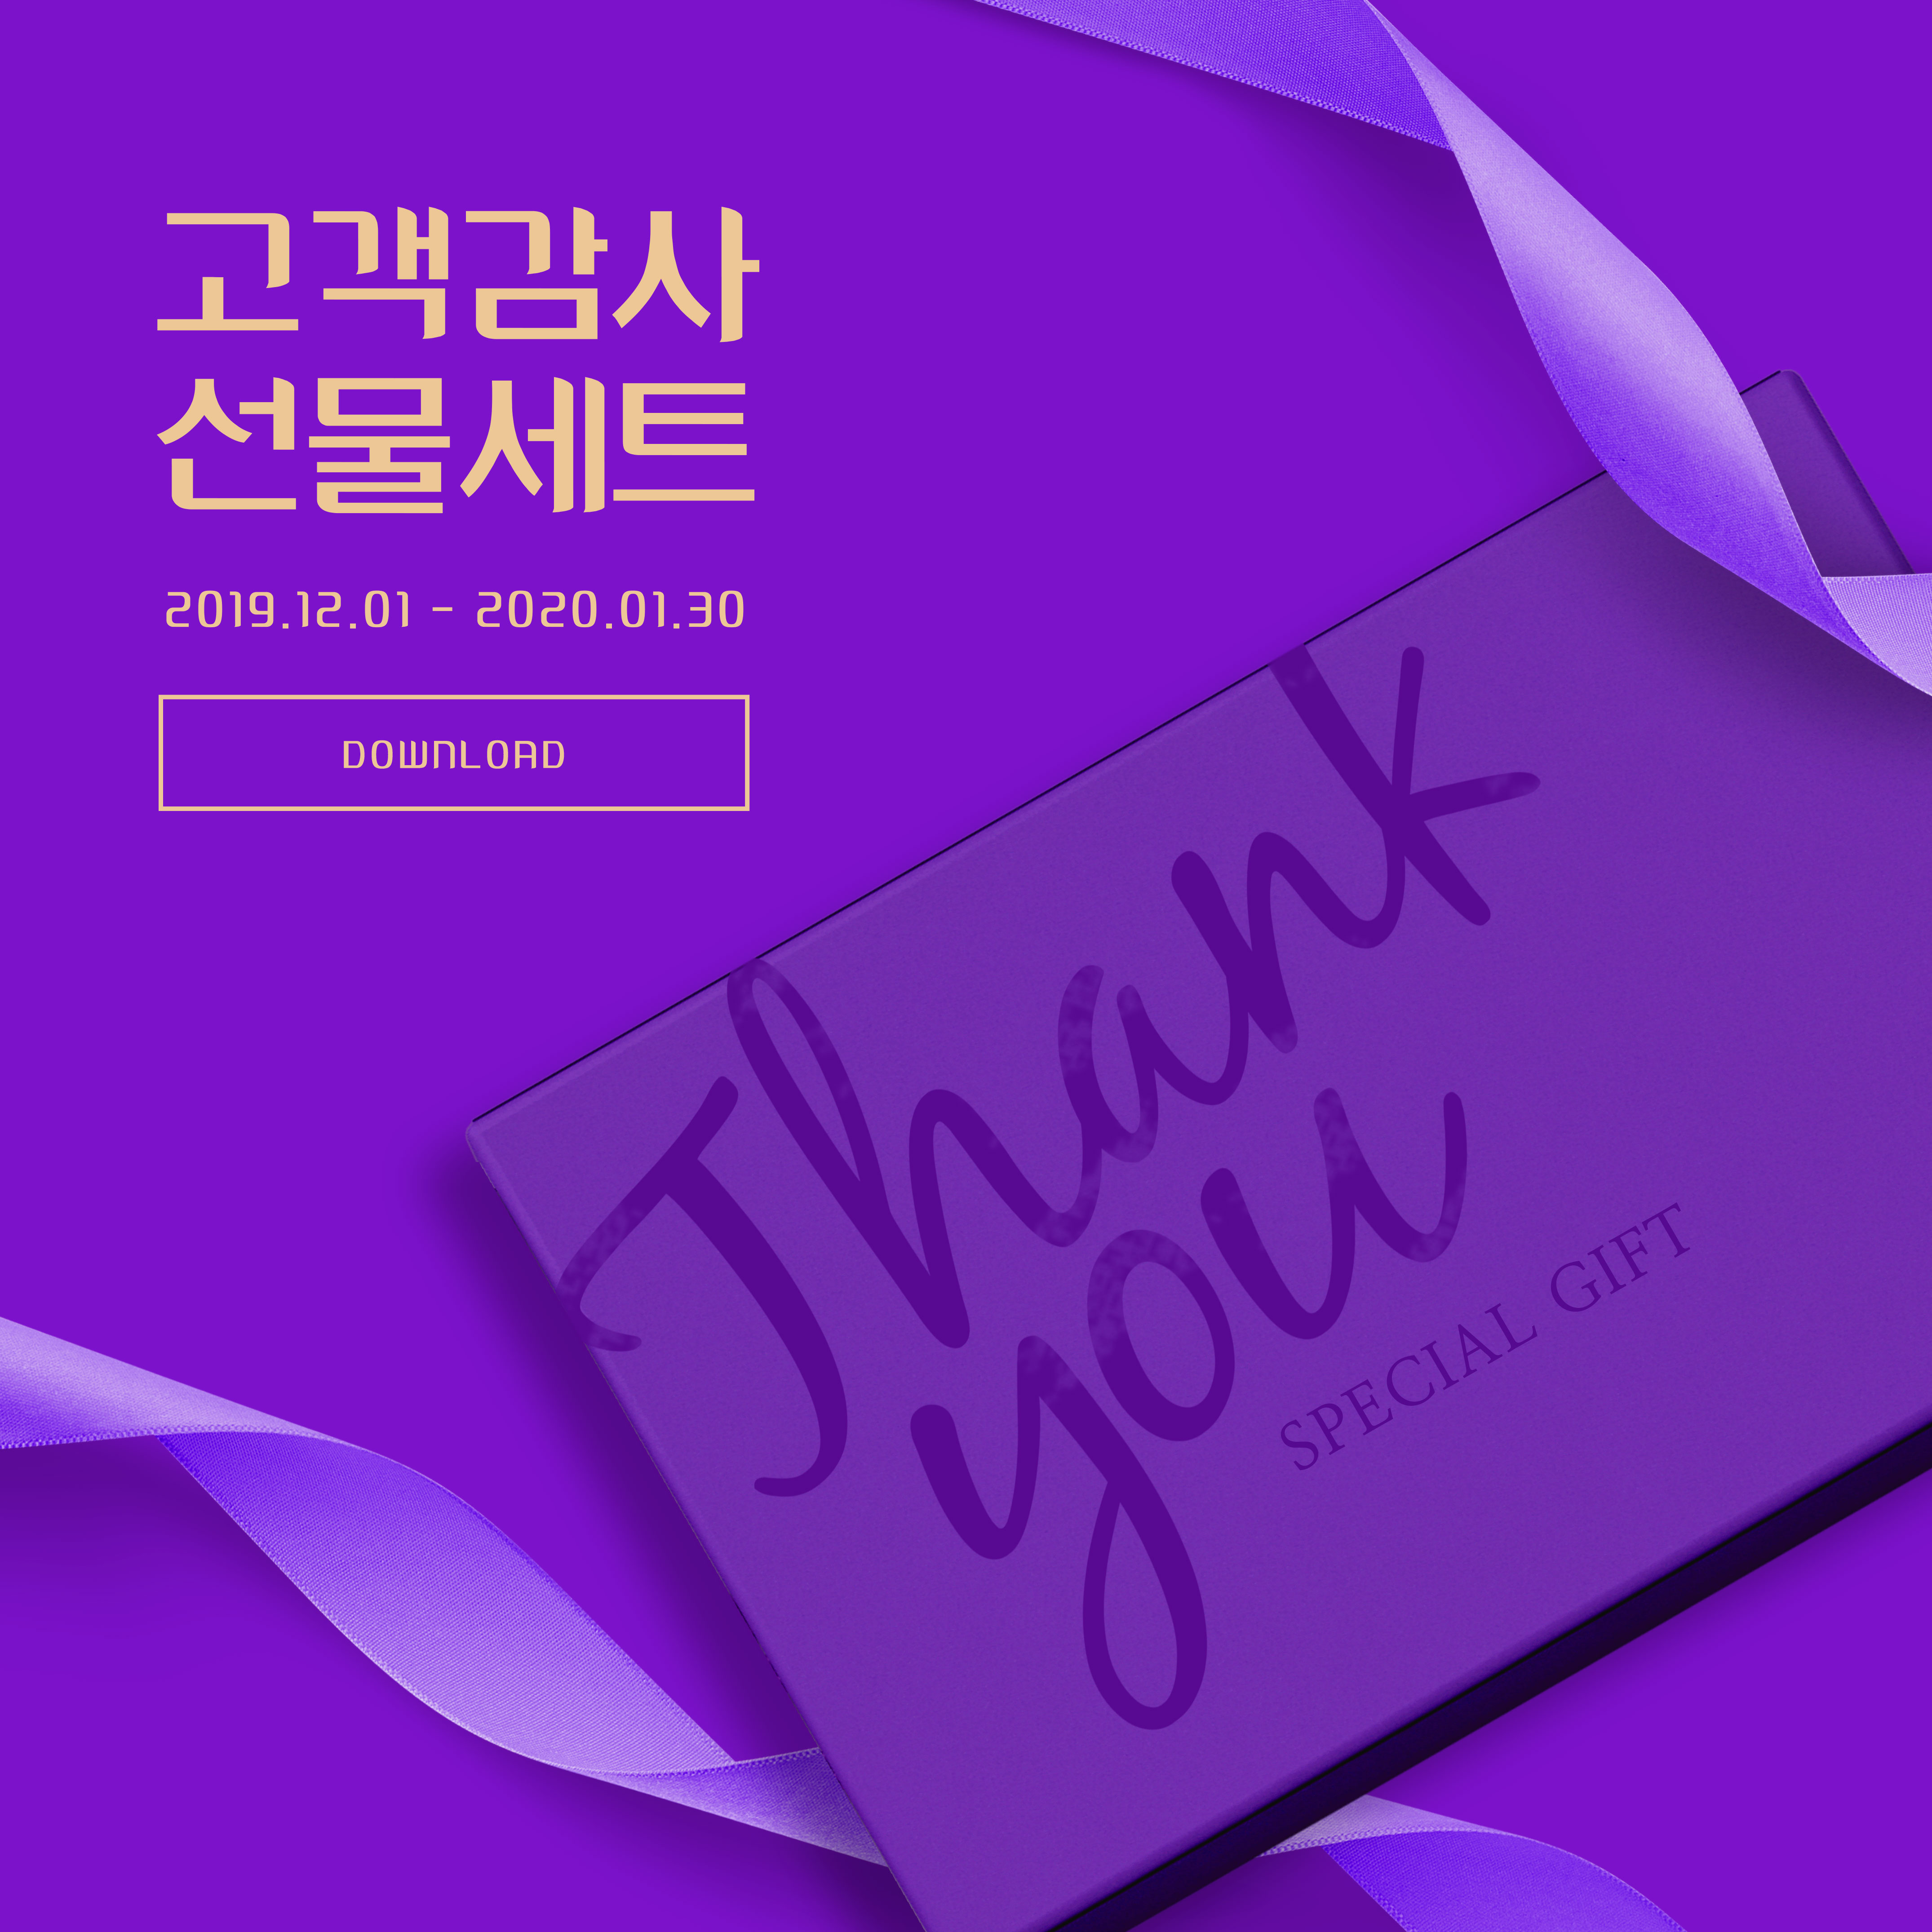 周年纪念活动礼品回馈主题深紫色海报PSD素材素材库精选素材插图